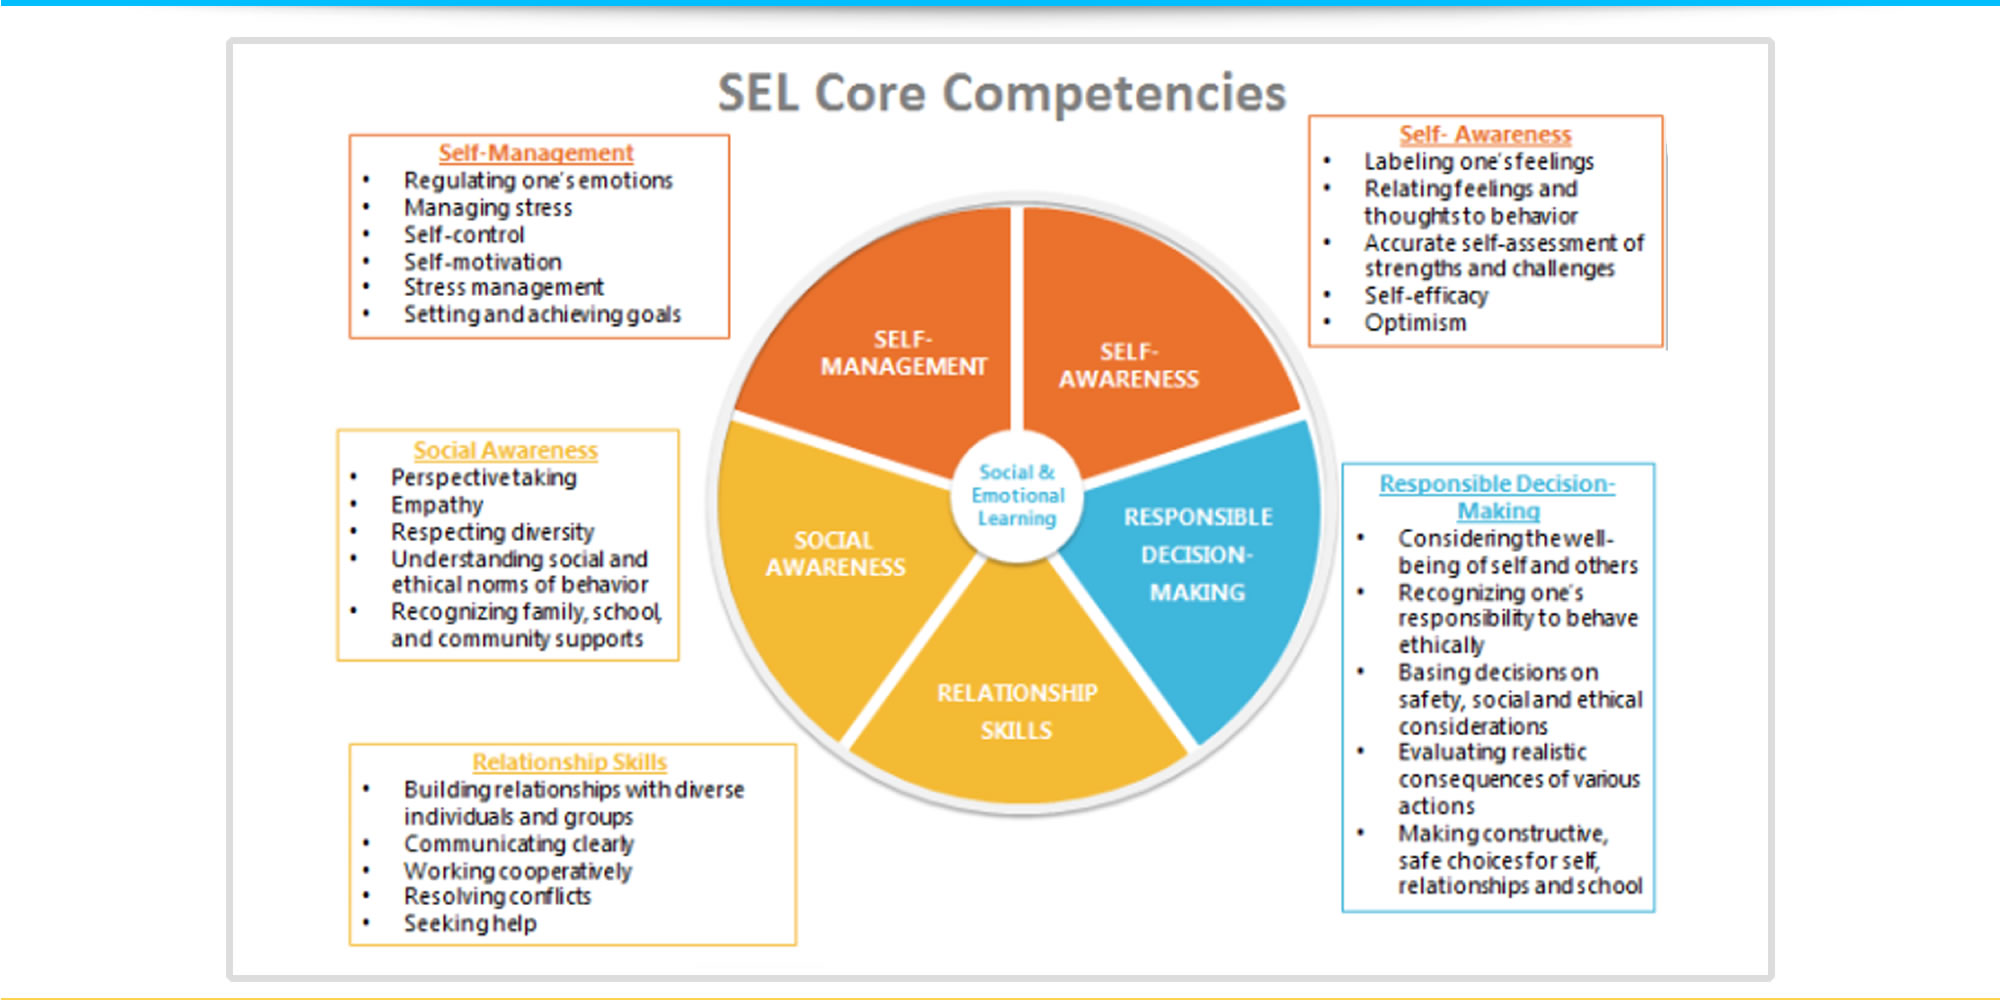 SEL Core Competencies